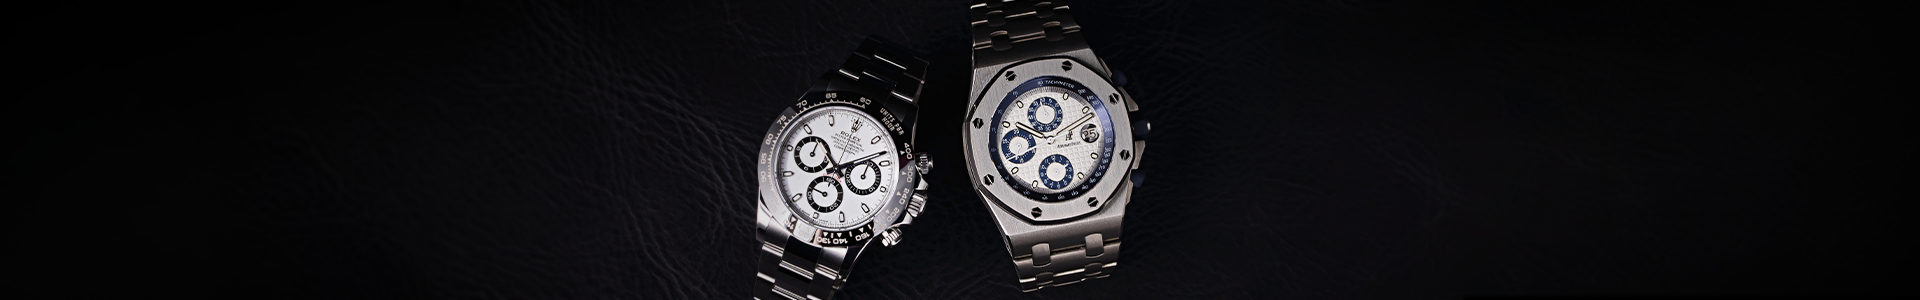 Rolex vs Audemars Piguet Watches